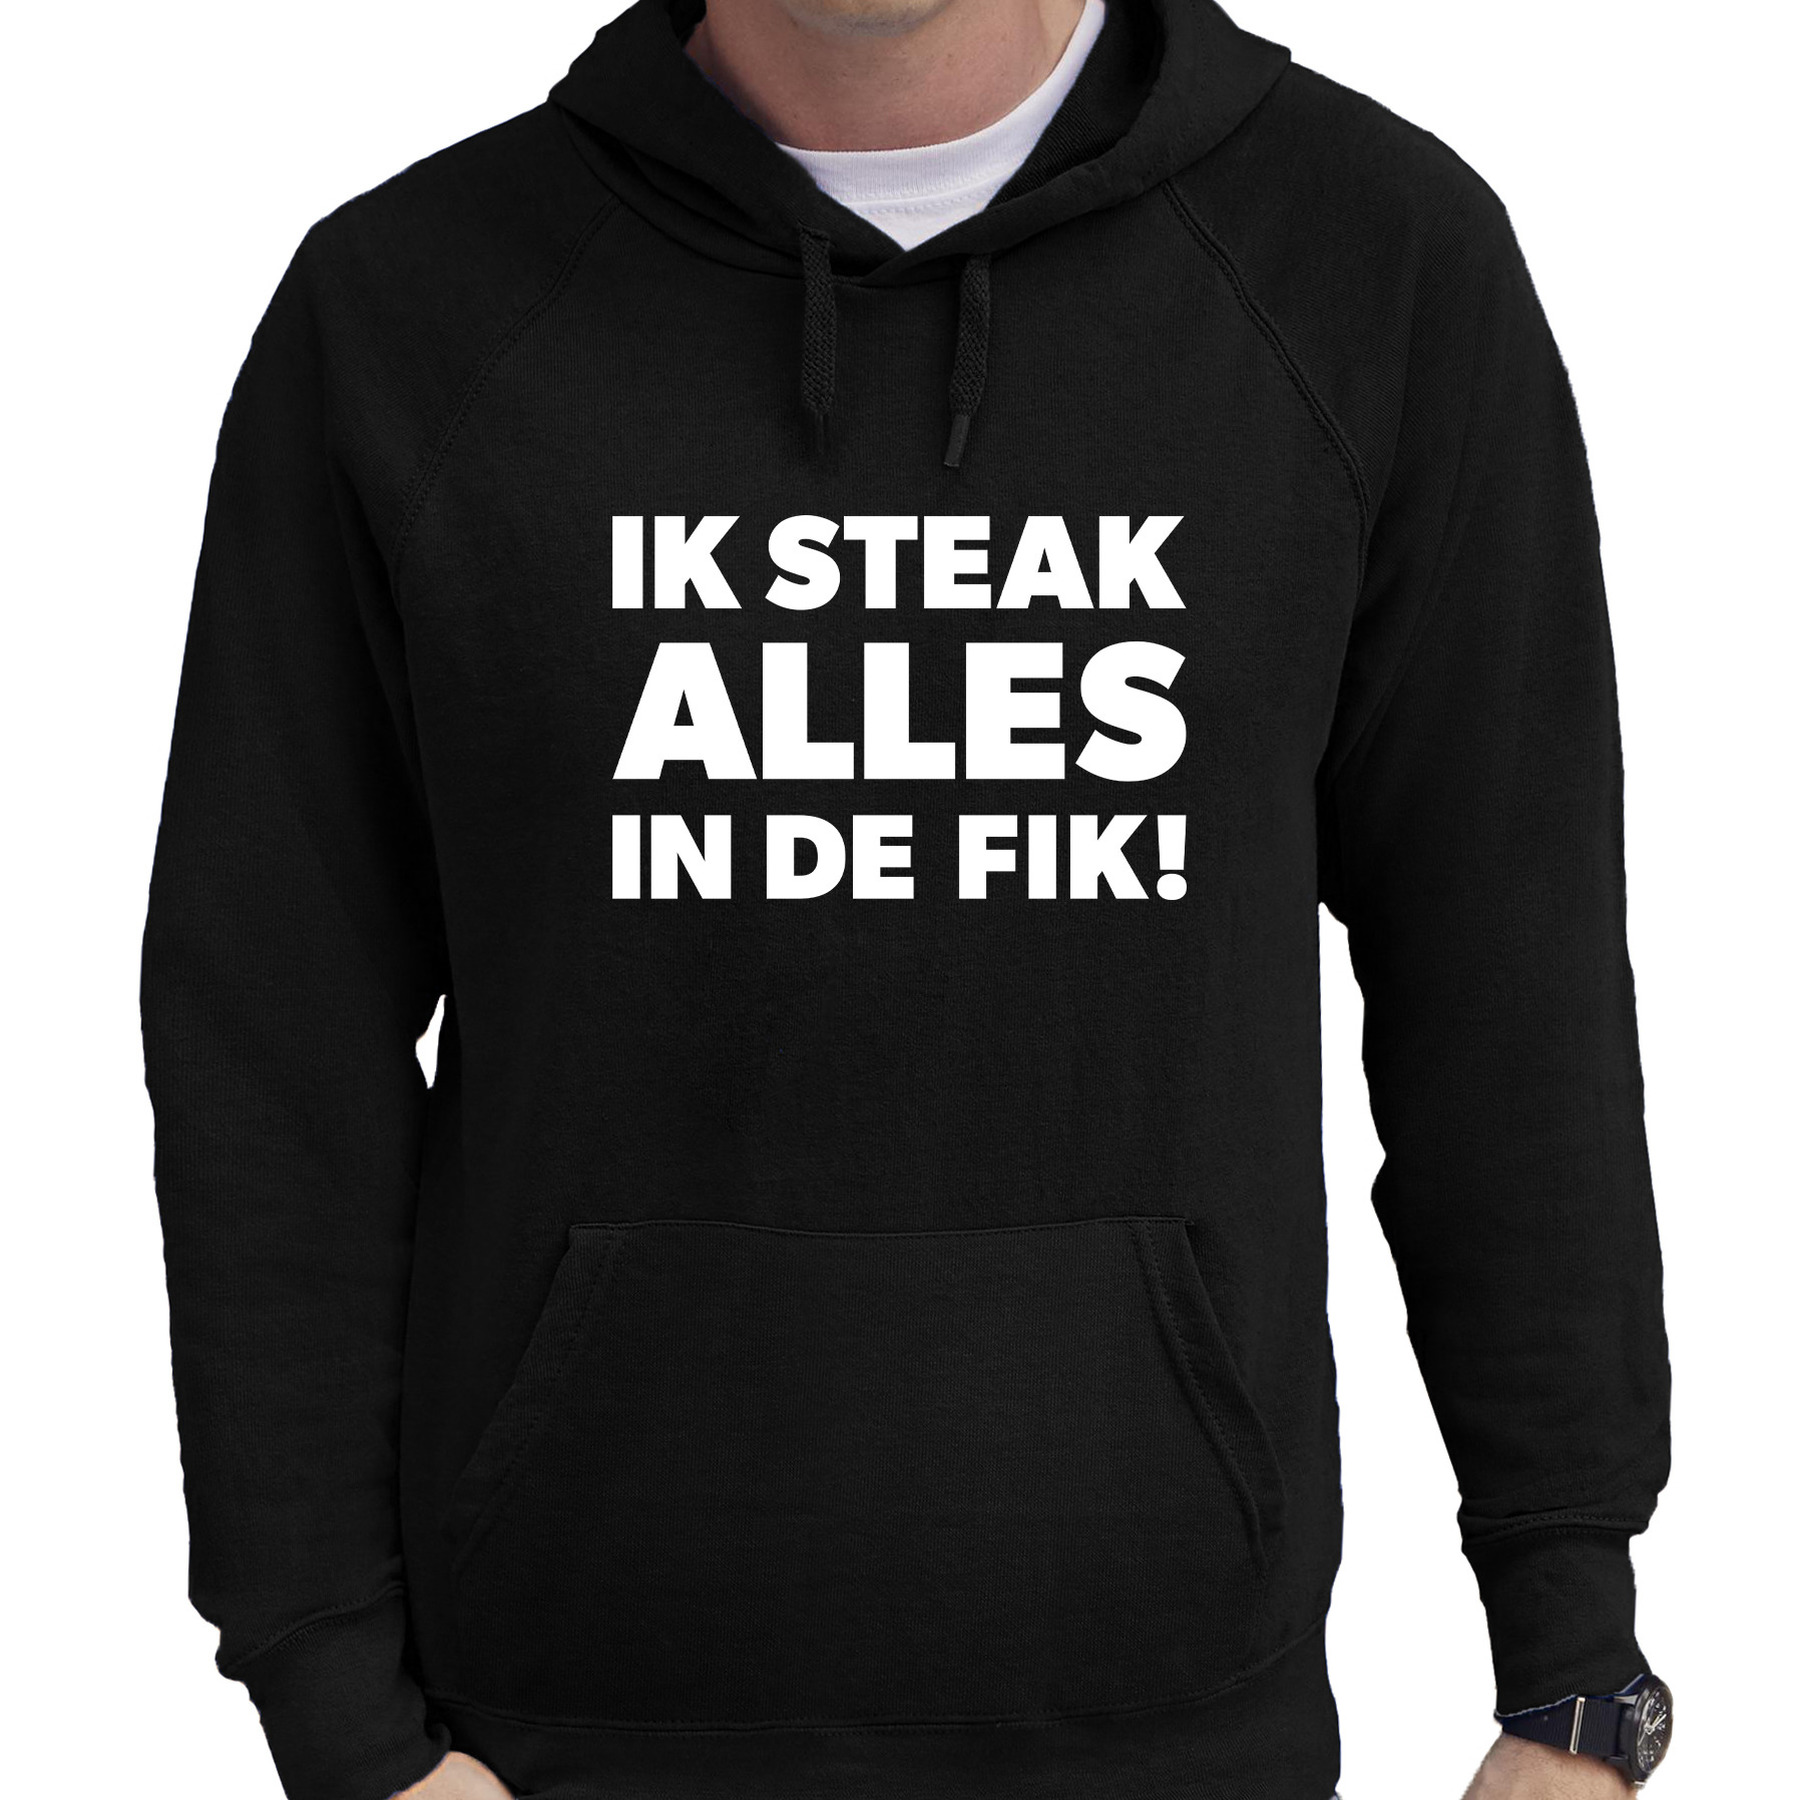 Steak alles in de fik bbq-barbecue cadeau hoodie zwart voor heren